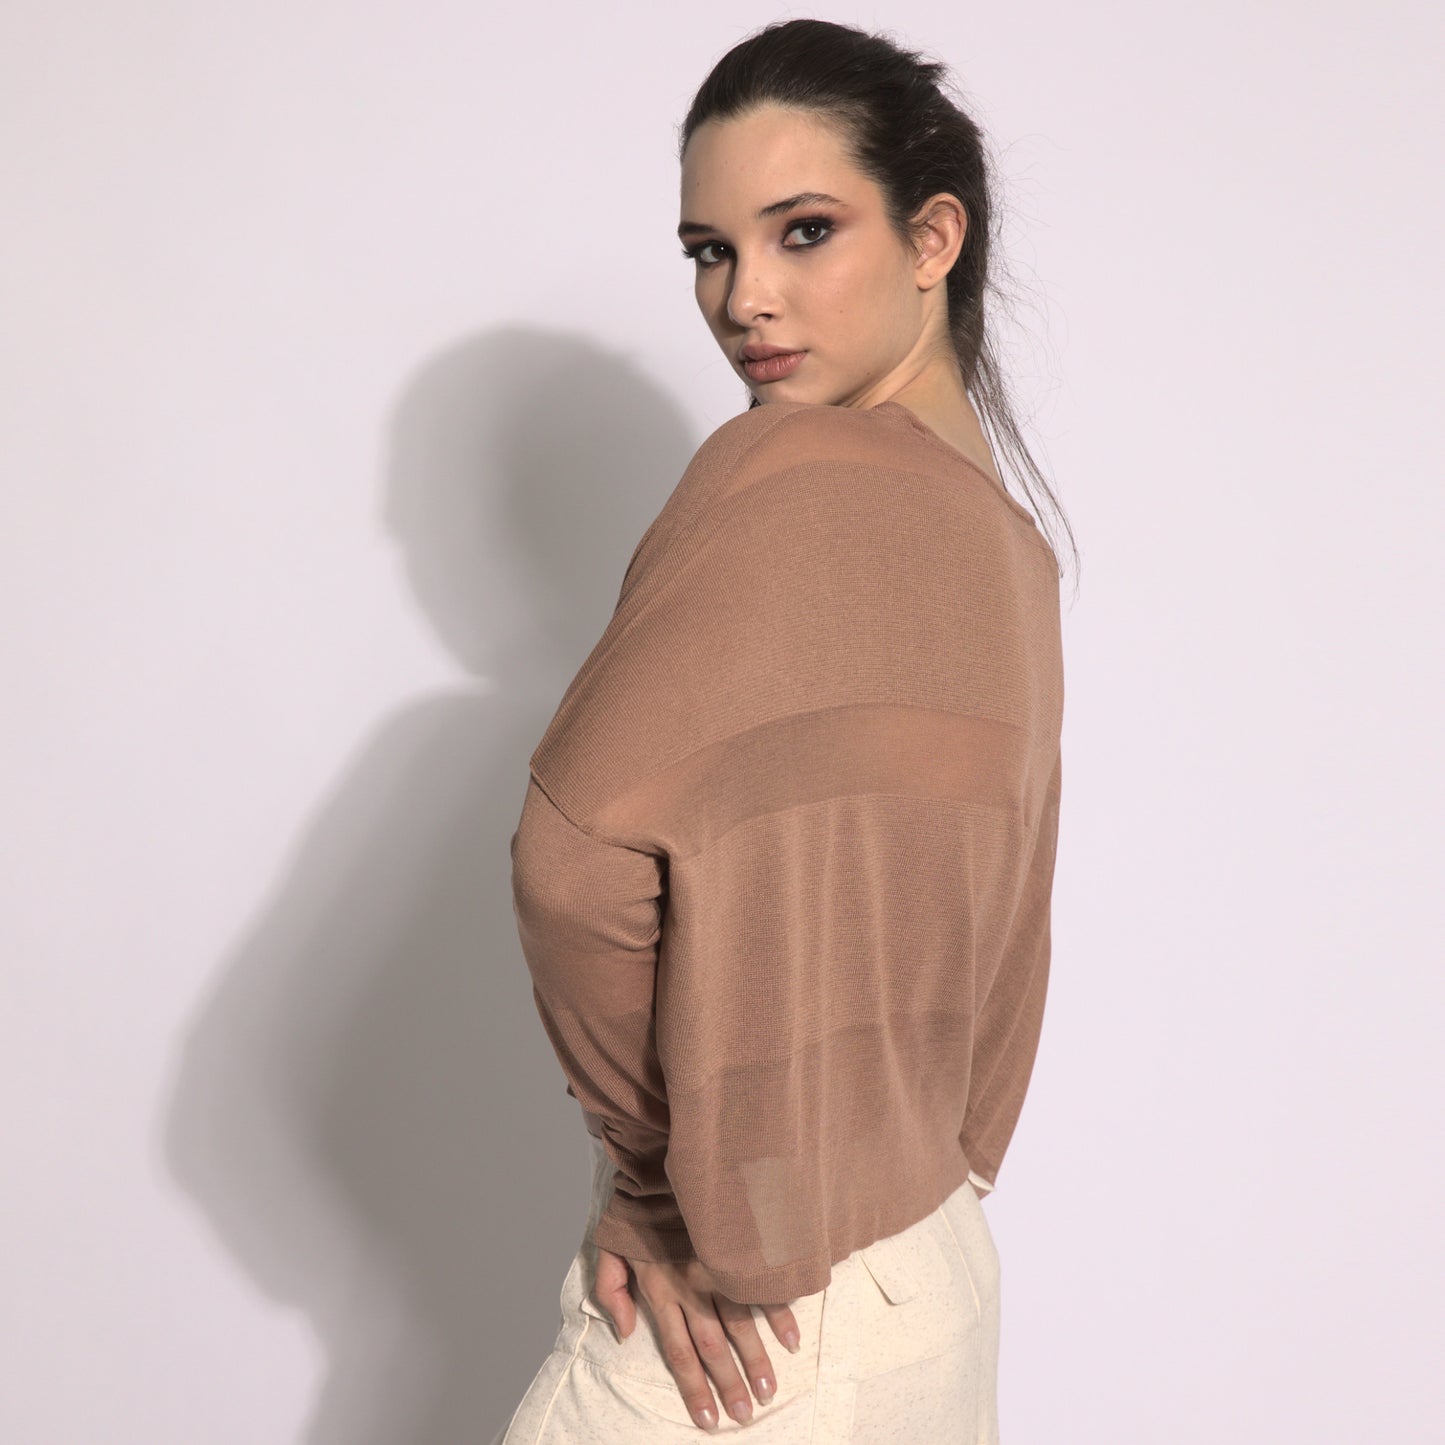 Giselle - Blusa de tricot listrada na cor argila com transparencias